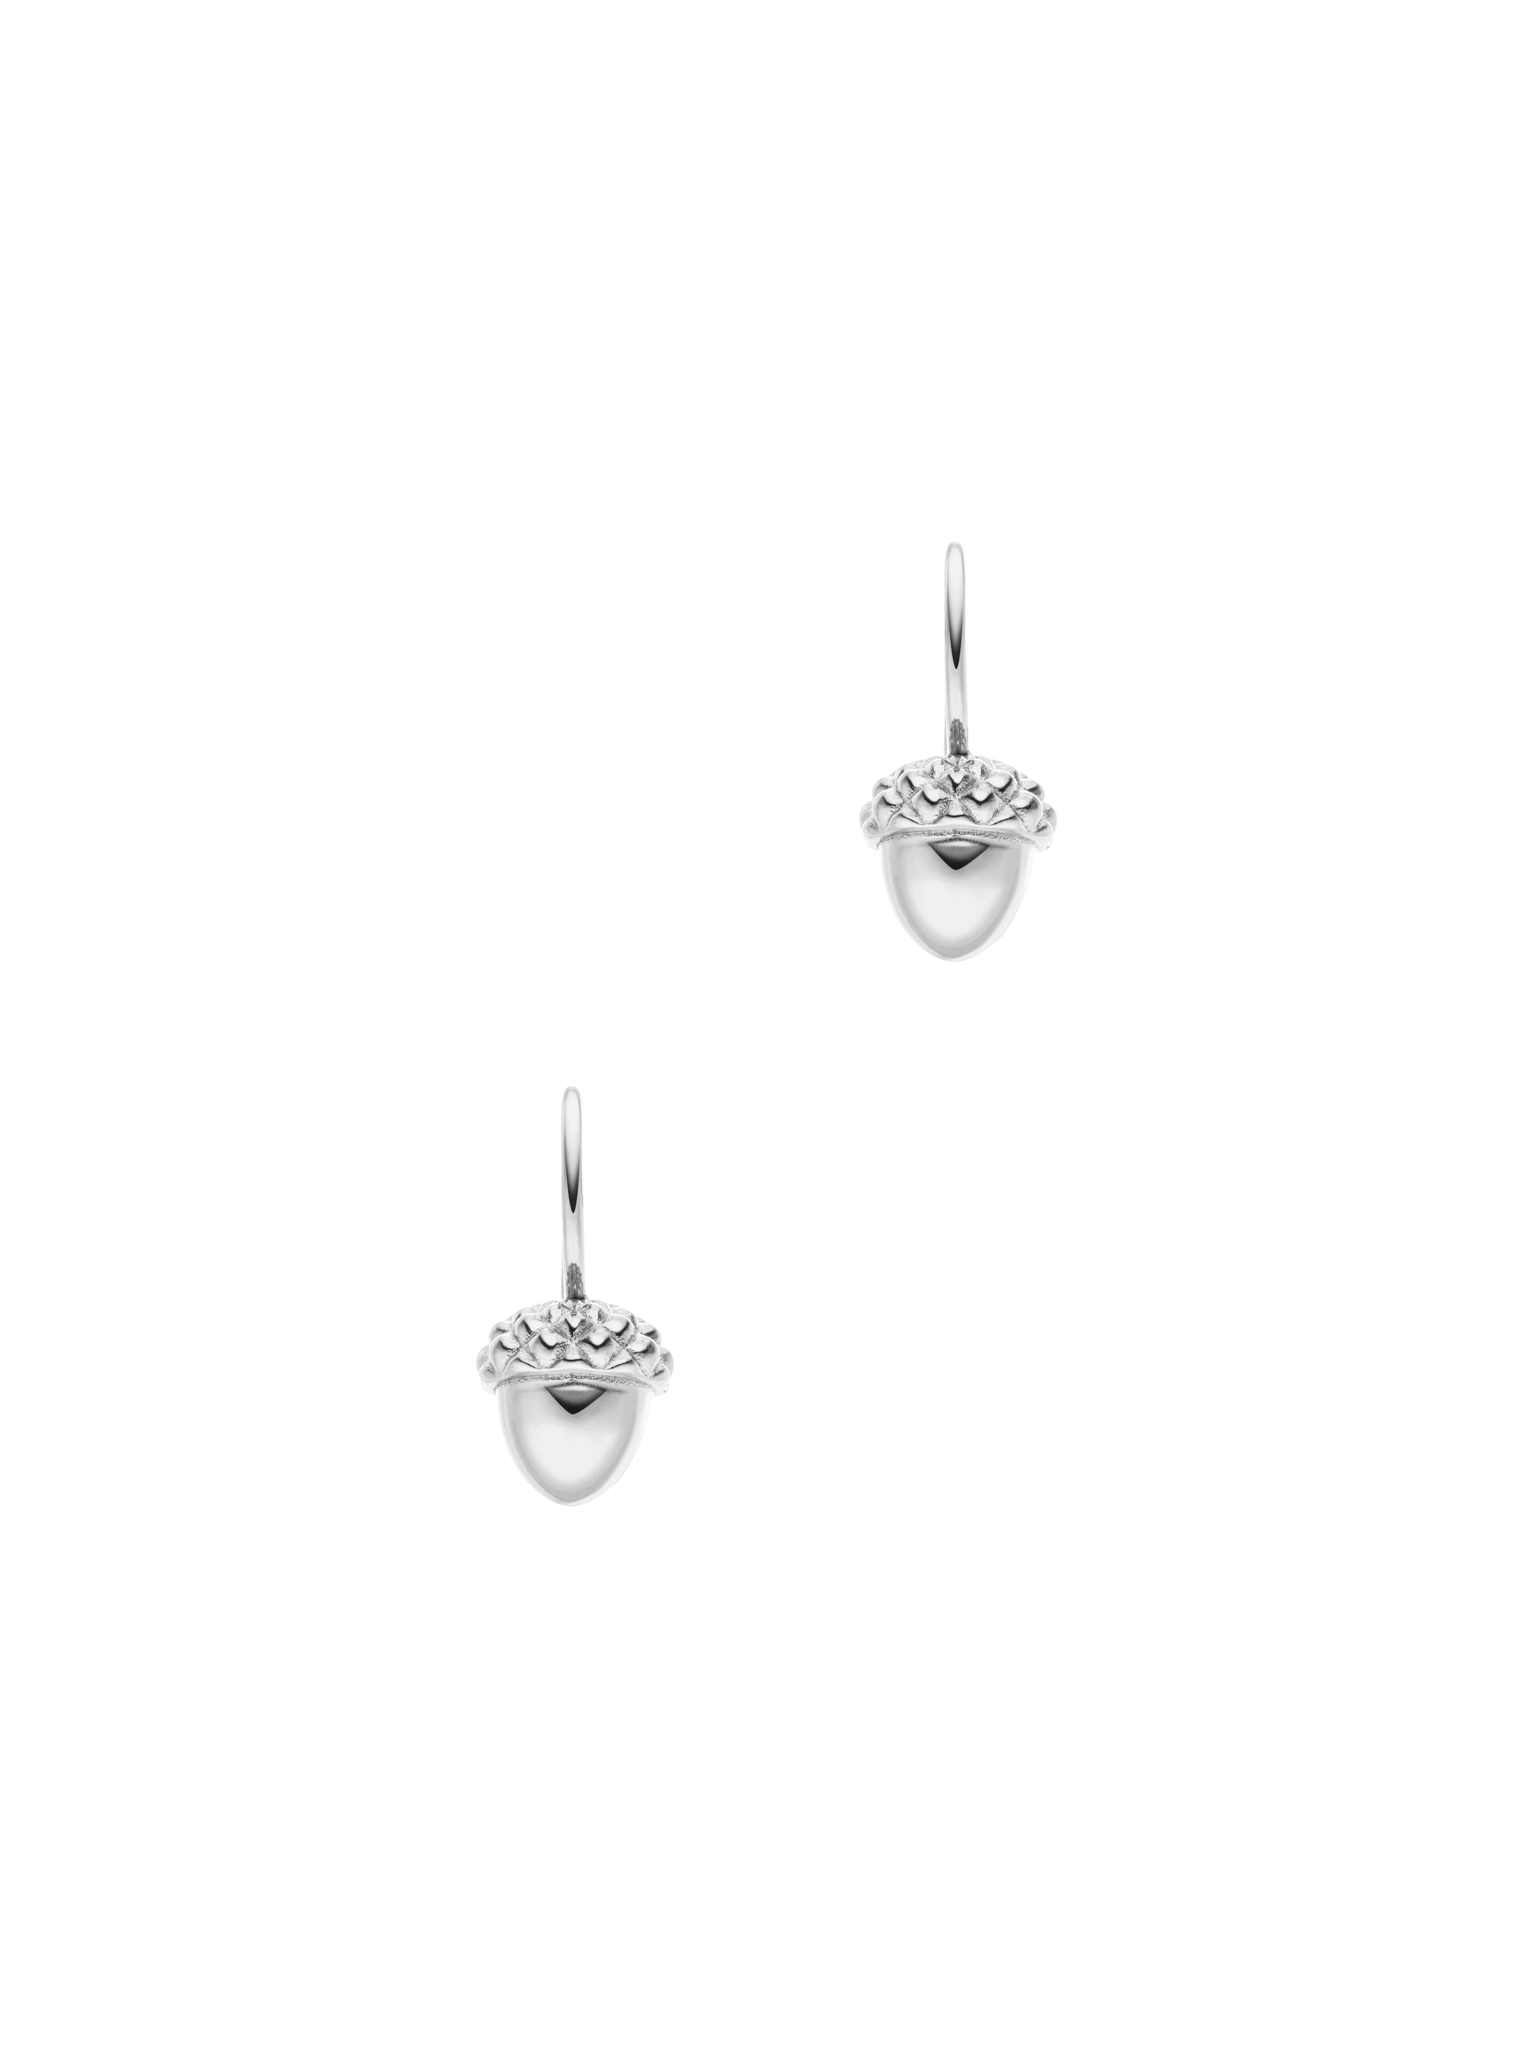 Acorn drop earrings